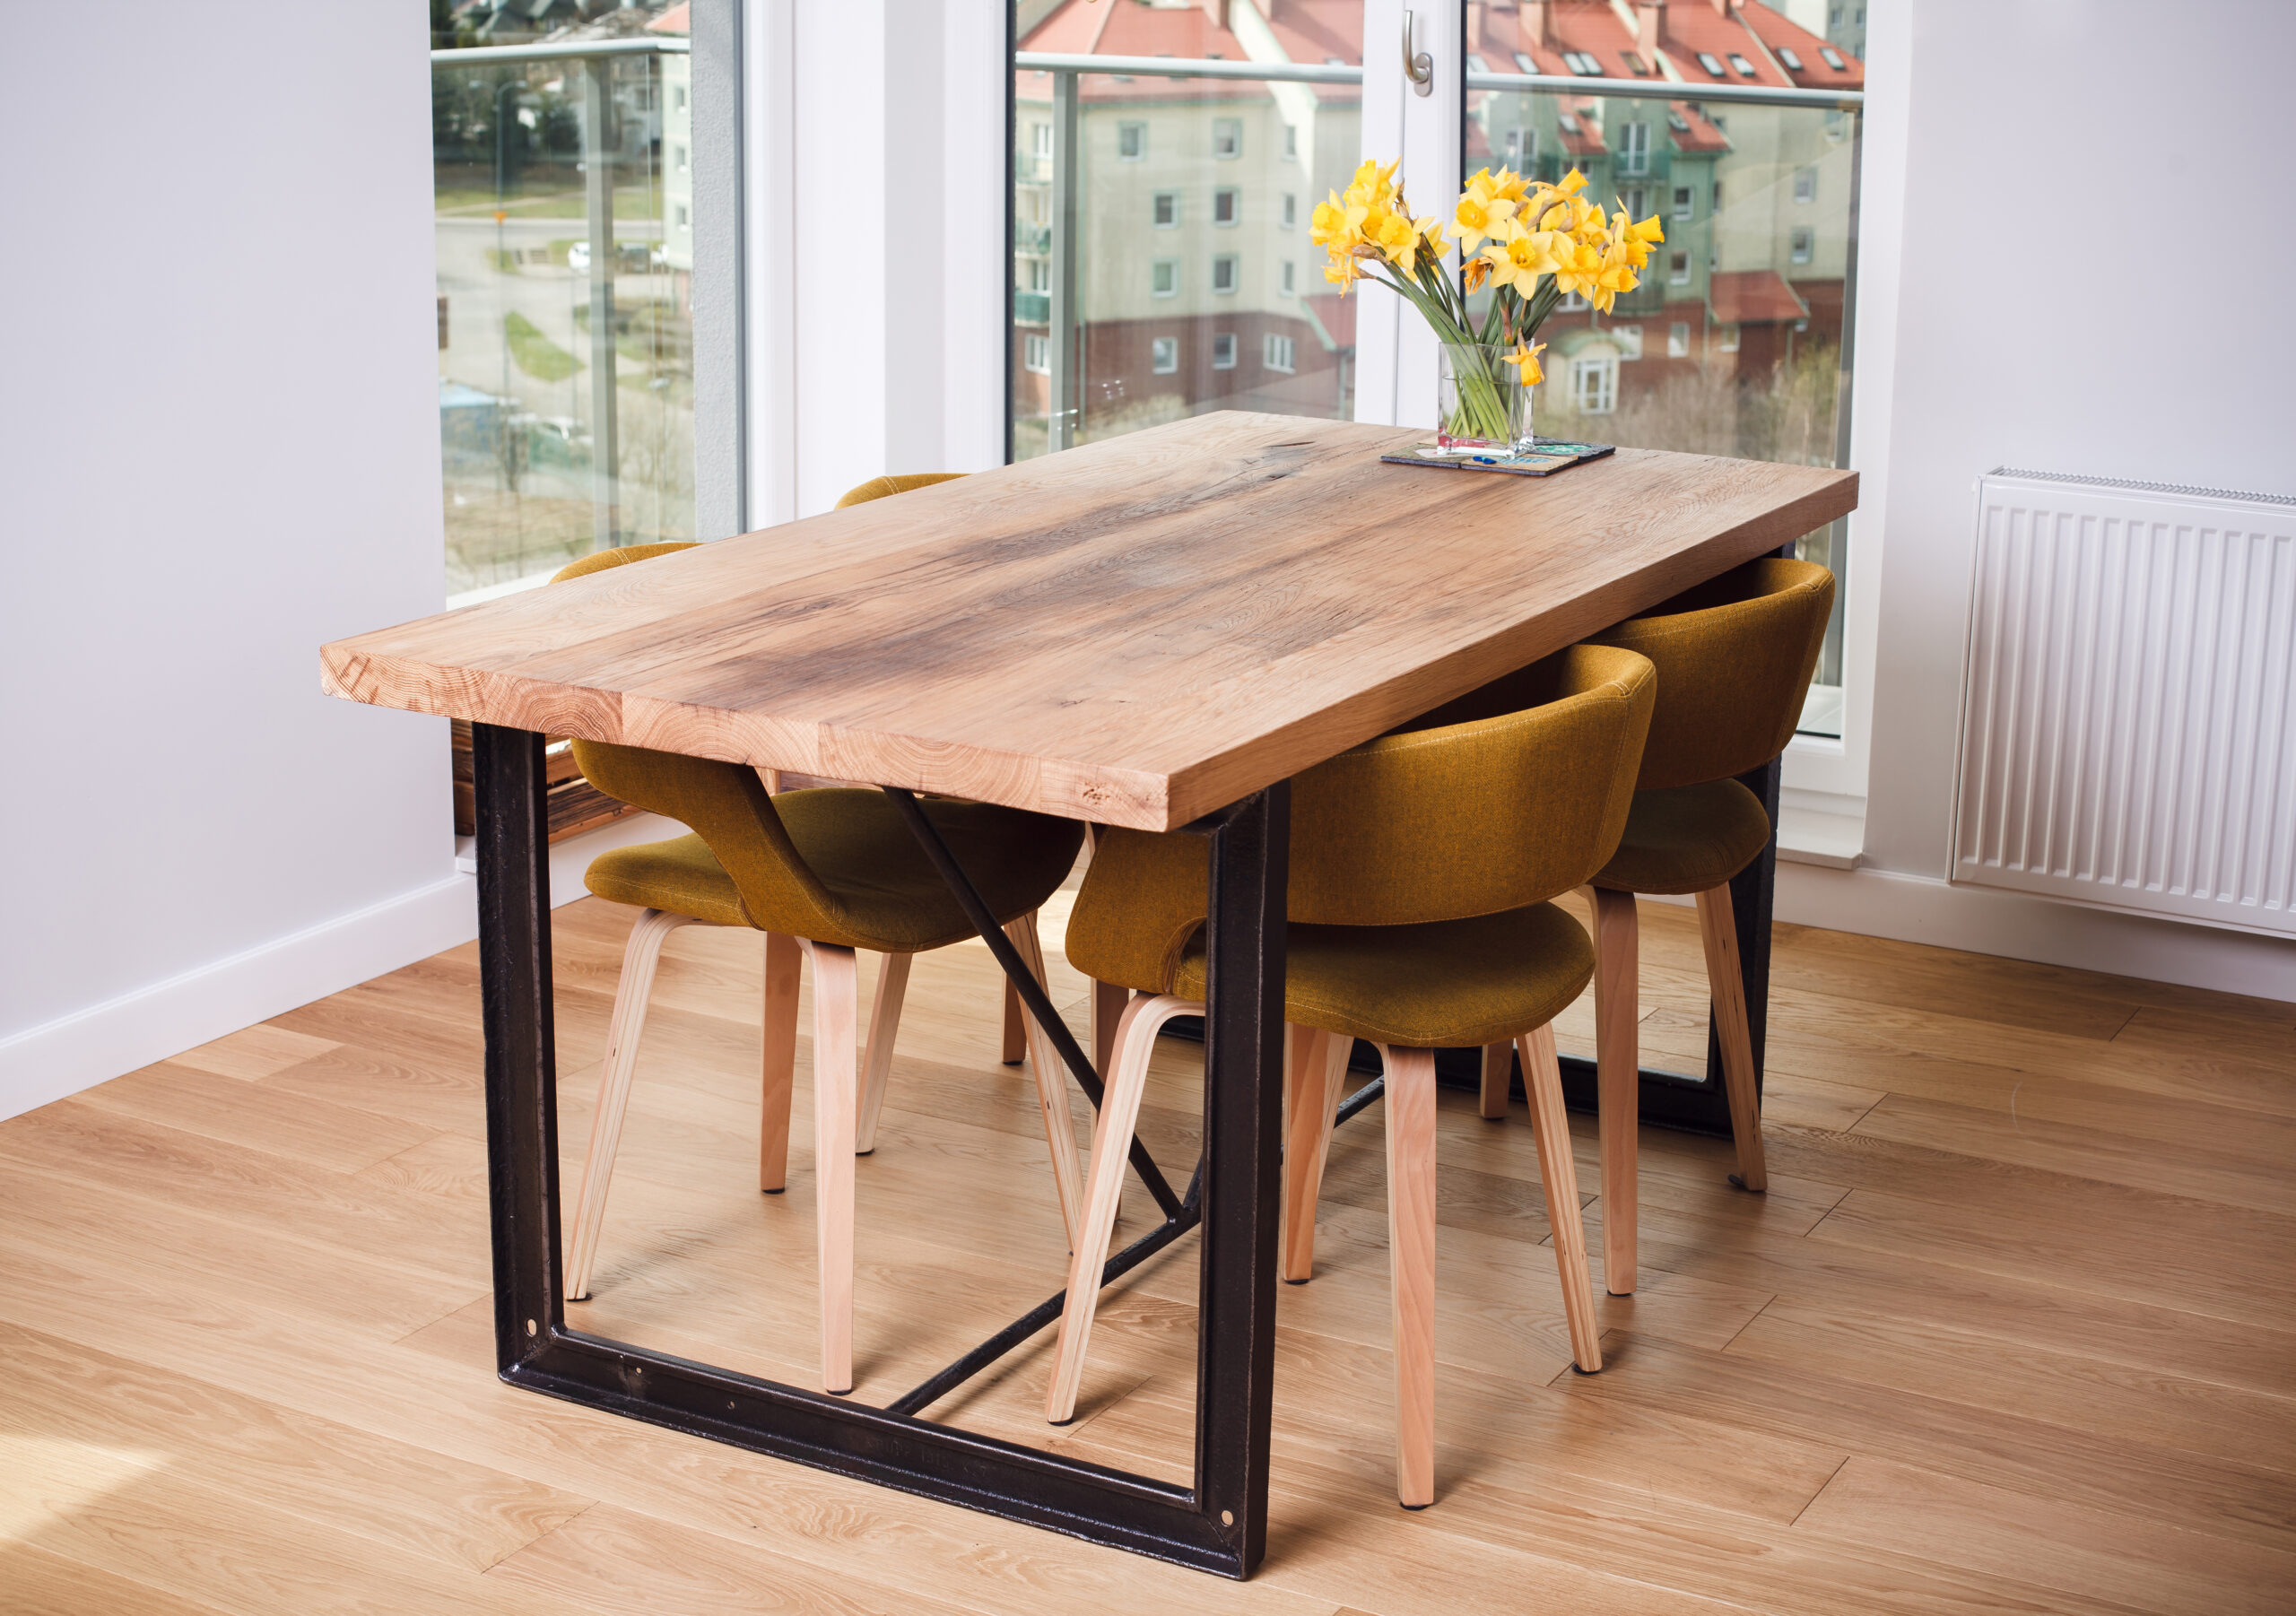 stół ze starego drewna i metalu z odzysku